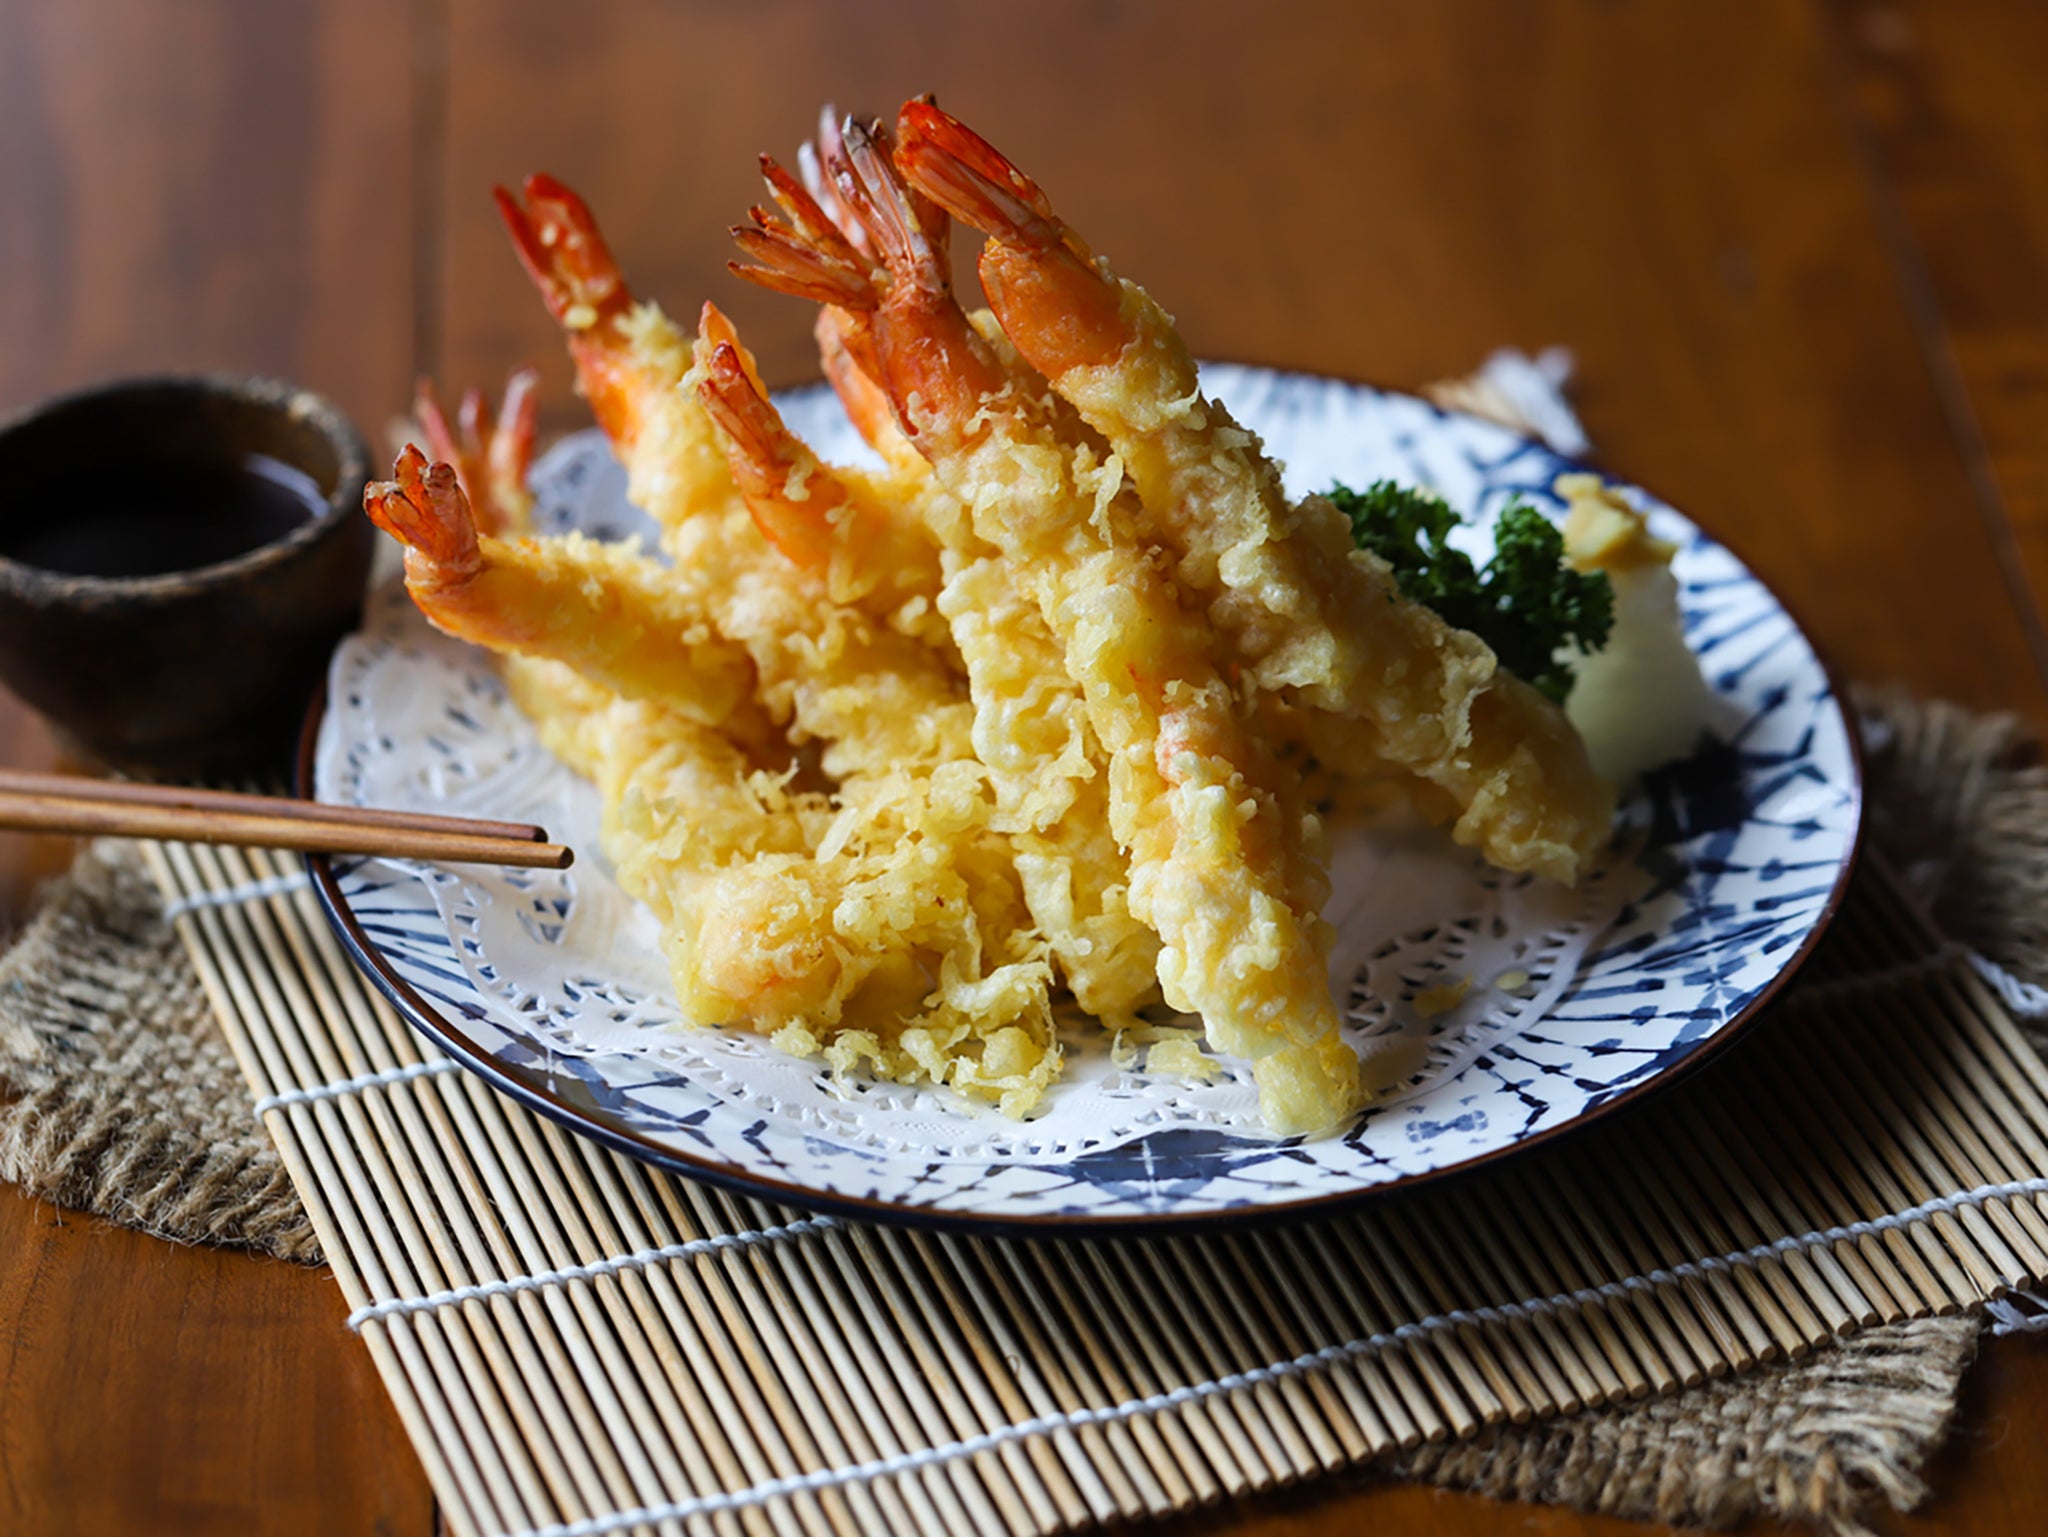 Los misioneros portugueses introdujeron en Japón el método de cocción occidental de la tempura